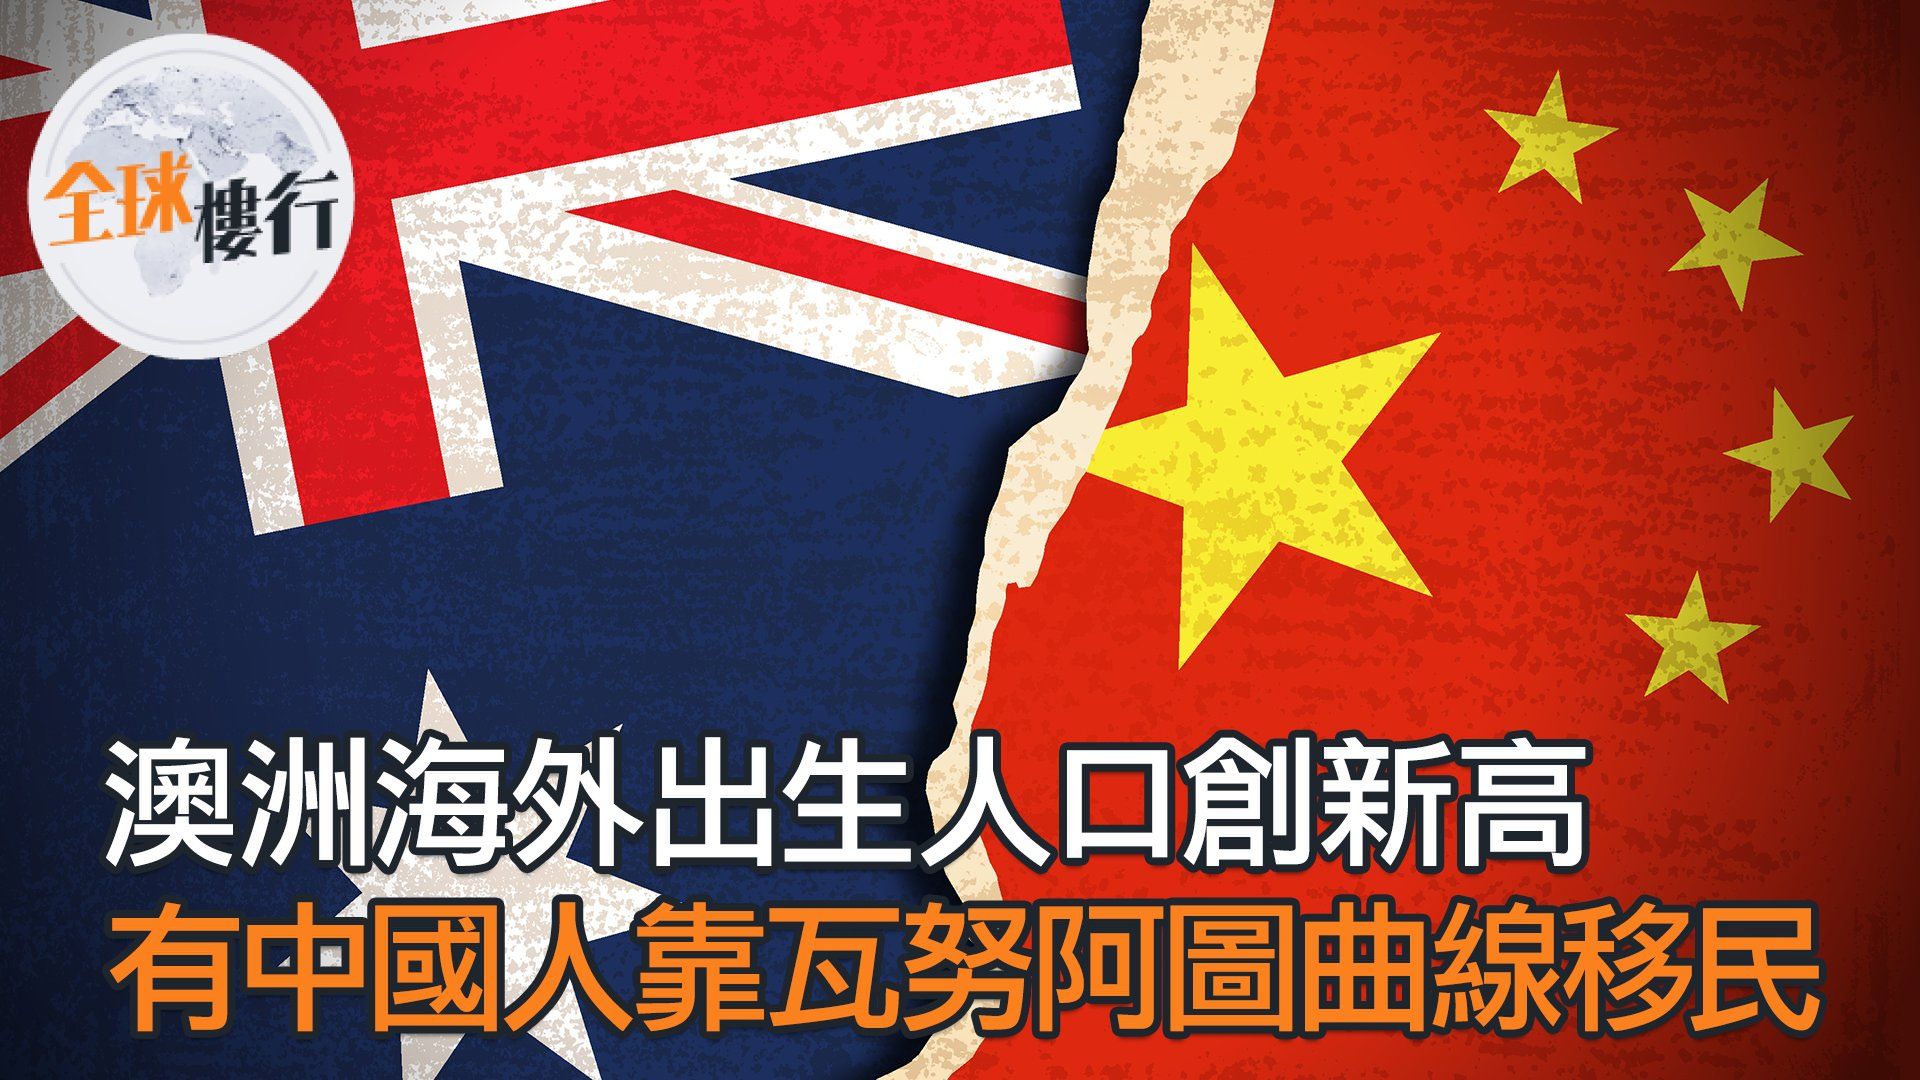 澳洲海外出生人口創新高 有中國人靠瓦努阿圖曲線移民